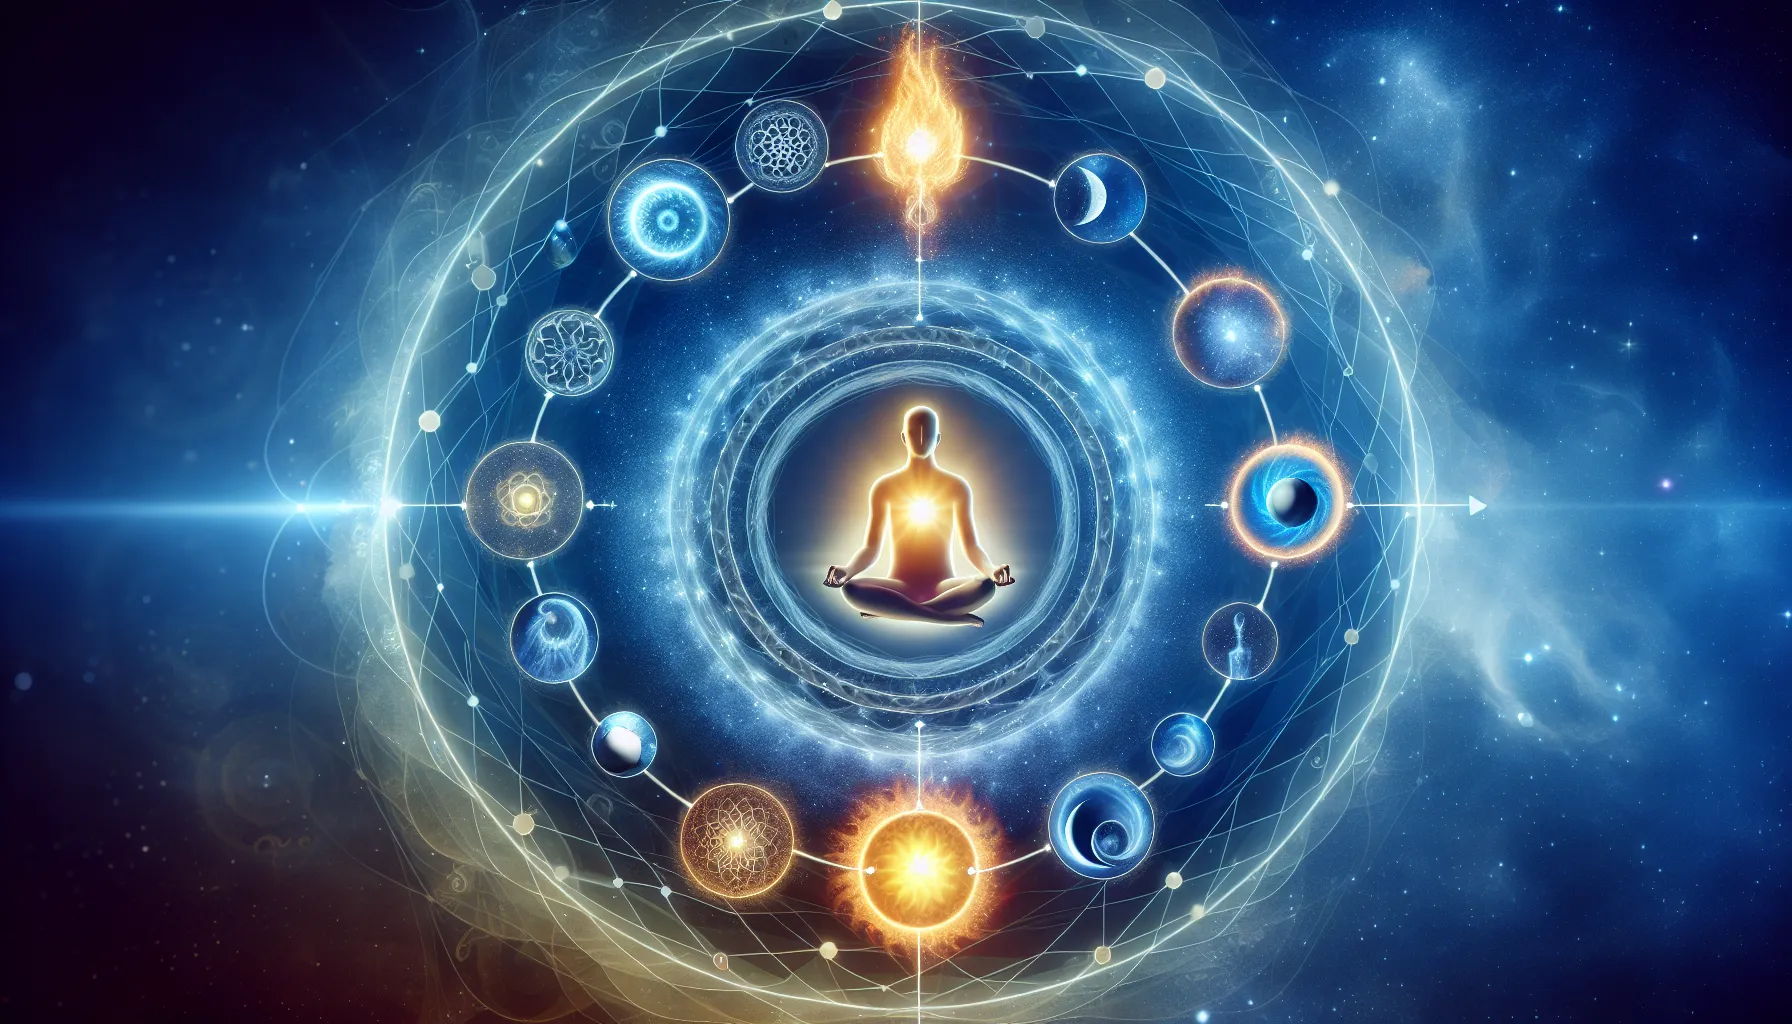 Imagen conceptual que representa la conexión entre la transmigración de almas y la reencarnación en un círculo interconectado de energía y transformación espiritual.